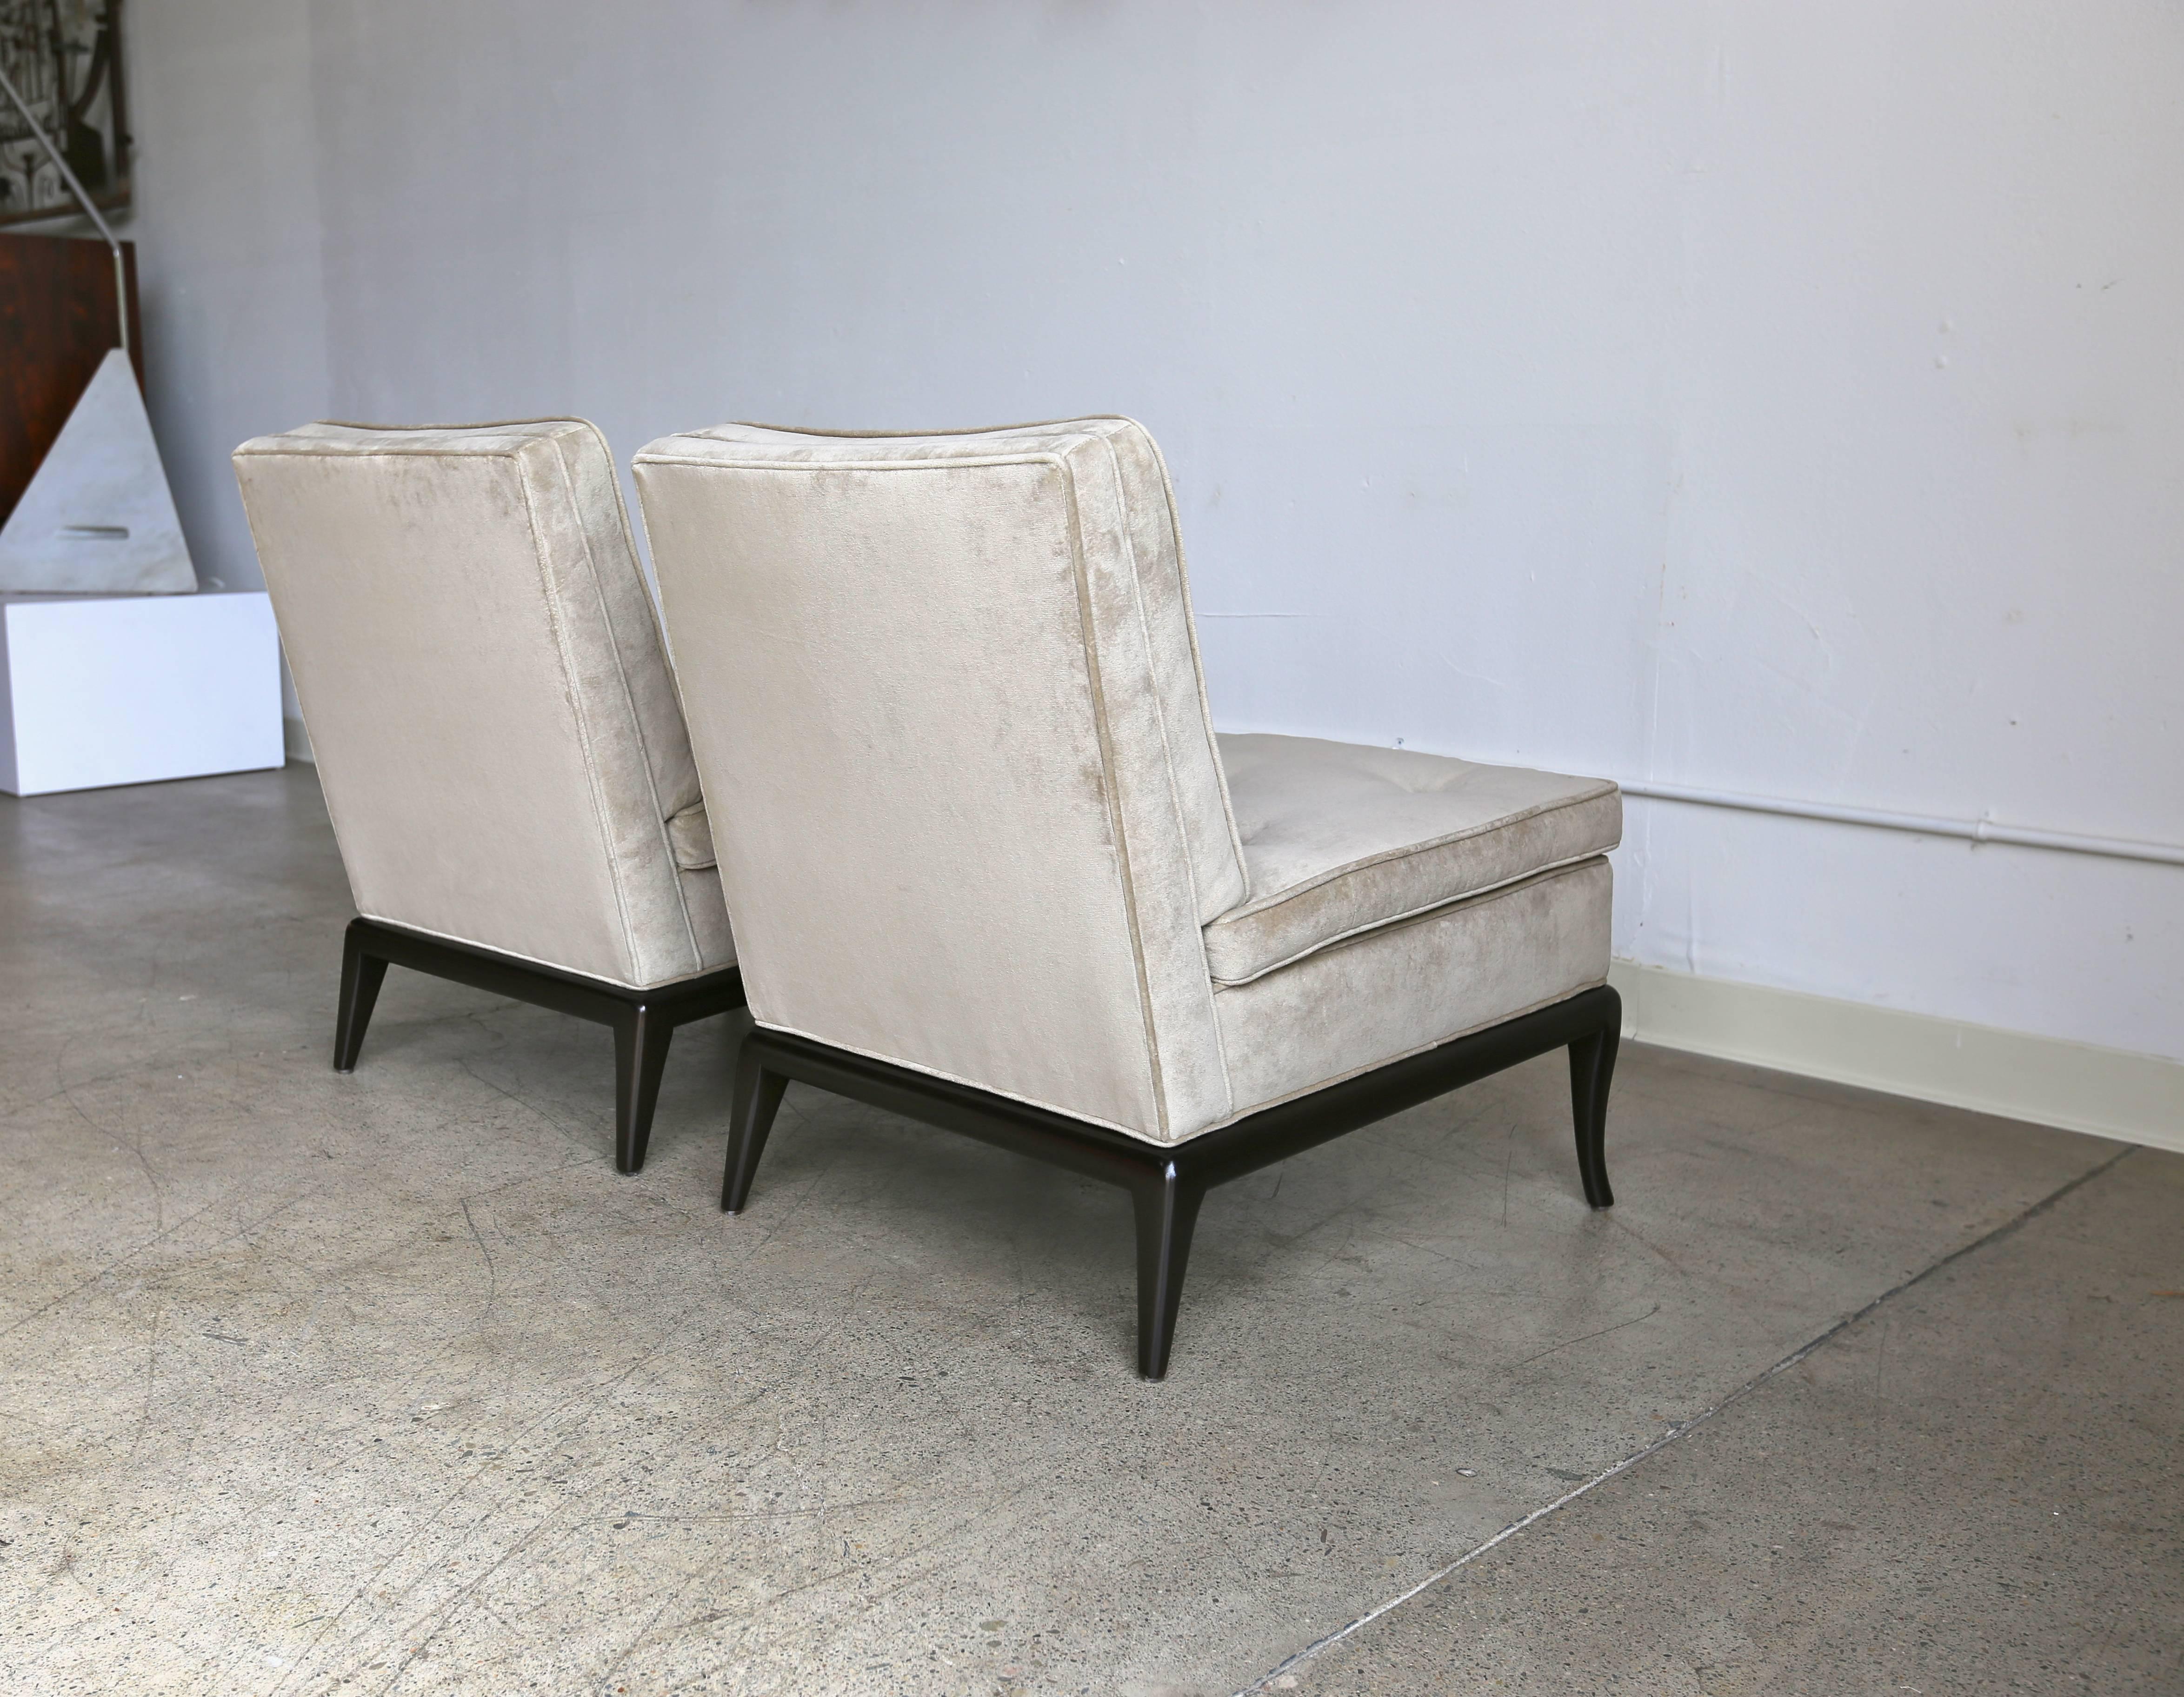 Ebonized Pair of Slipper Chairs by T.H. Robsjohn-Gibbings for Widdicomb